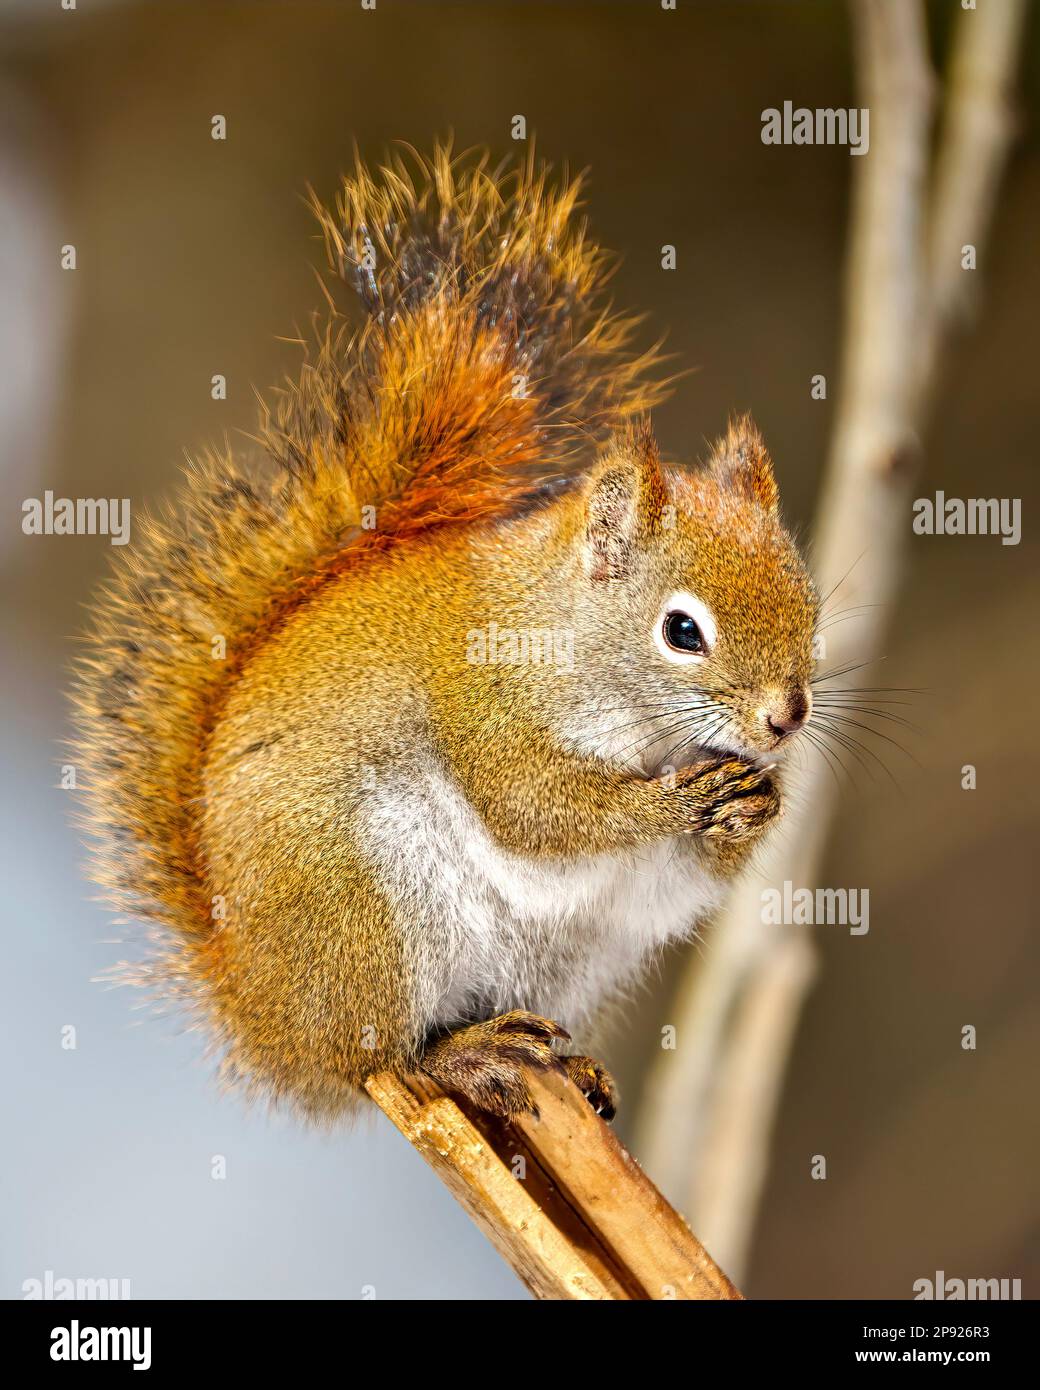 Das Eichhörnchen sitzt auf einem Baumzweig mit betenden Händen und einem verschwommenen Hintergrund und zeigt buschigen Schwanz in seiner Umgebung und Umgebung. Stockfoto